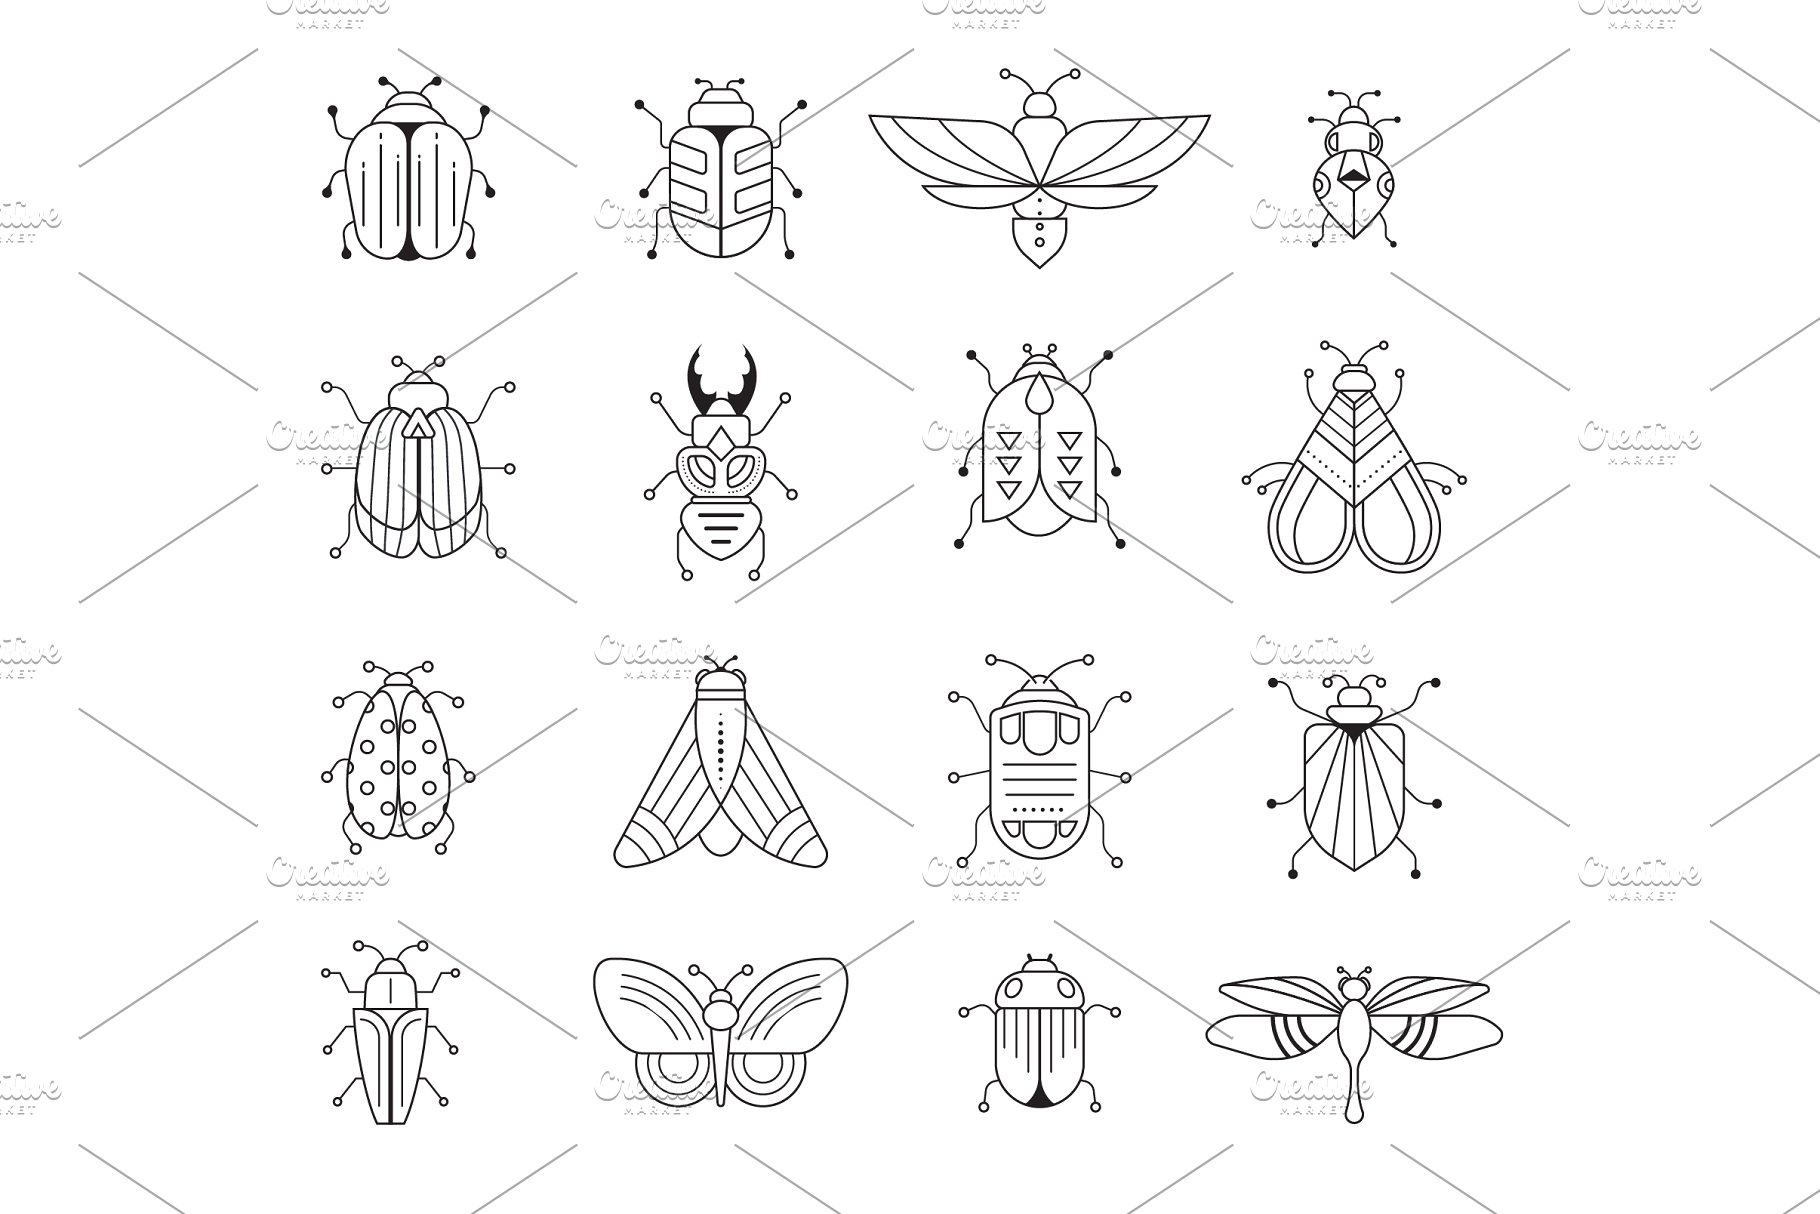 昆虫图形设计合集 Bugs and insects coll